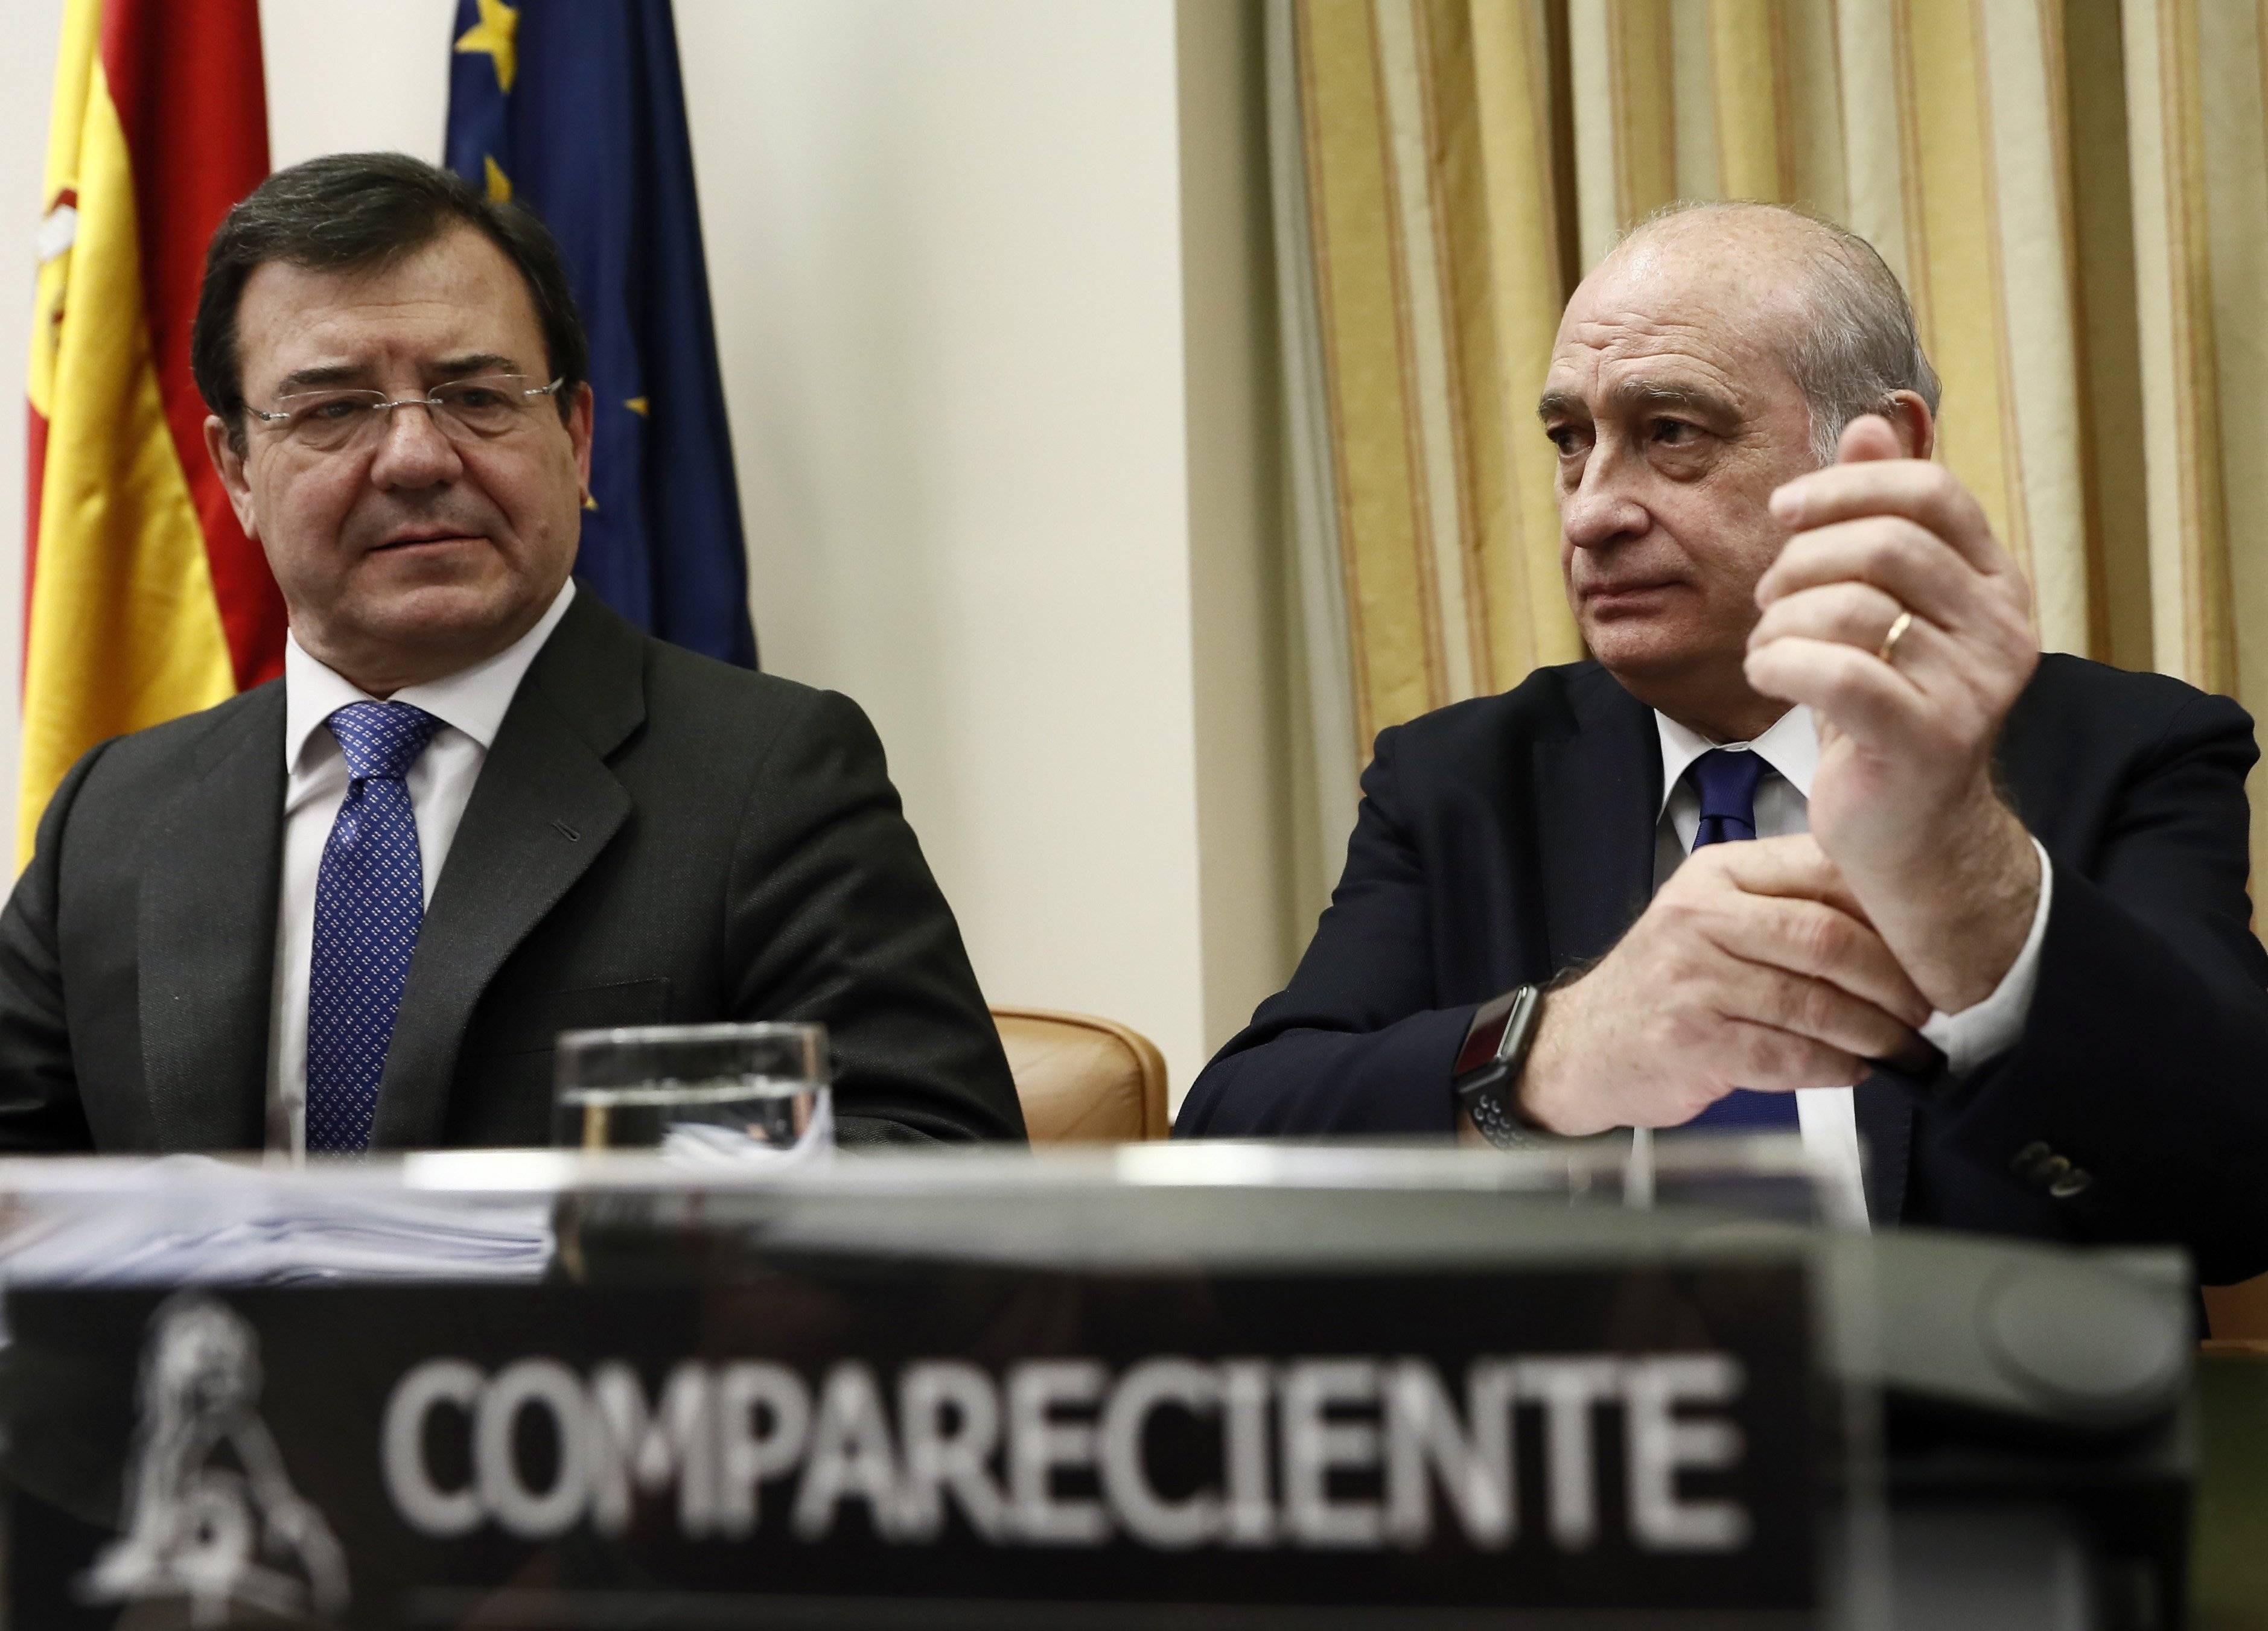 La comissió de l'Operació Catalunya es prorroga fins al juliol